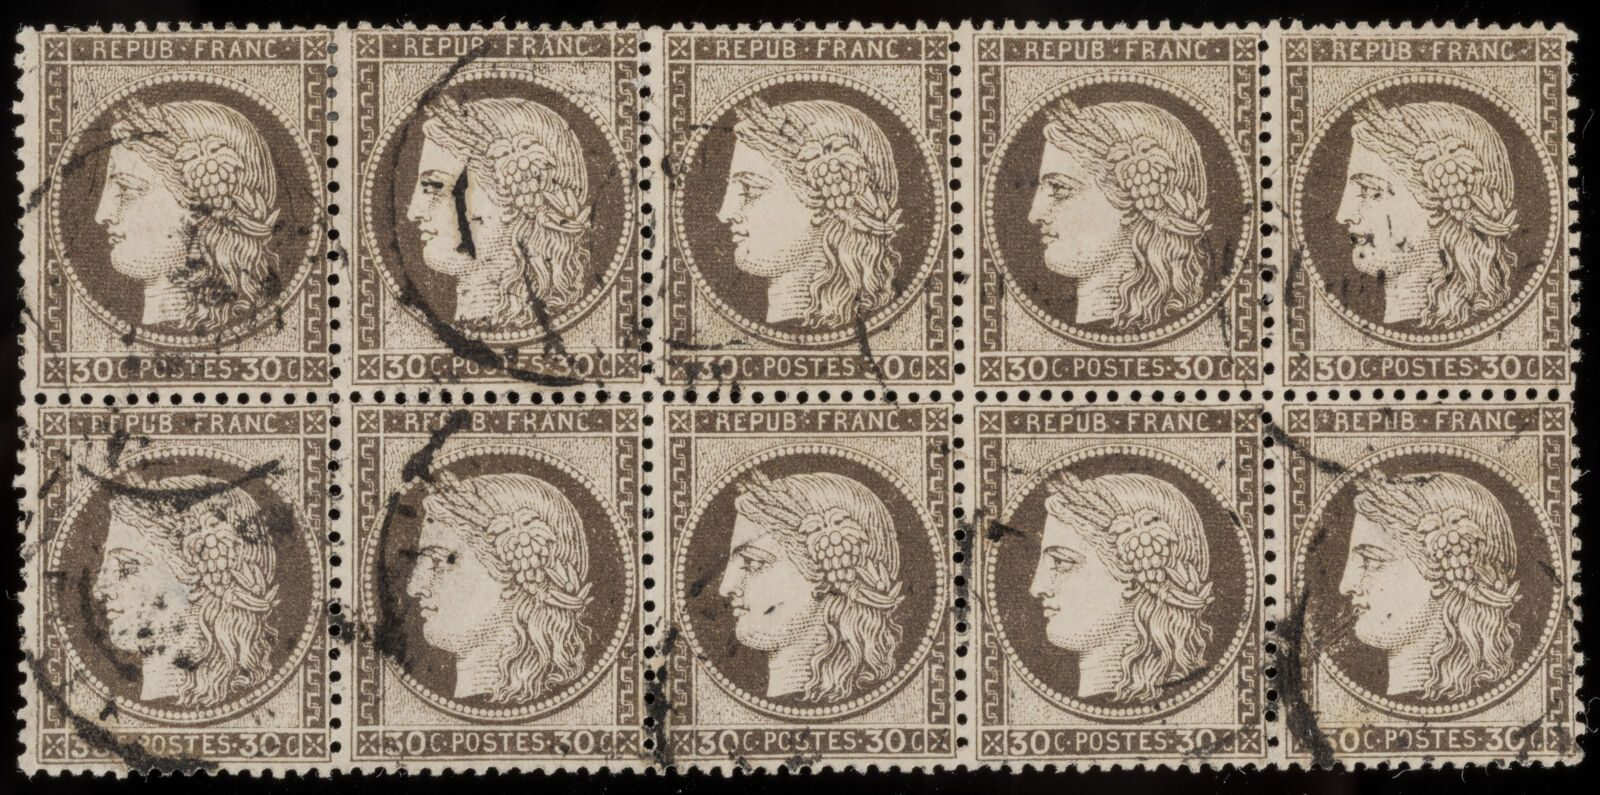 Null Sello N°56 - Bloque de 10 sellos cancelados : 30c marrón oscuro. Firmado Ba&hellip;